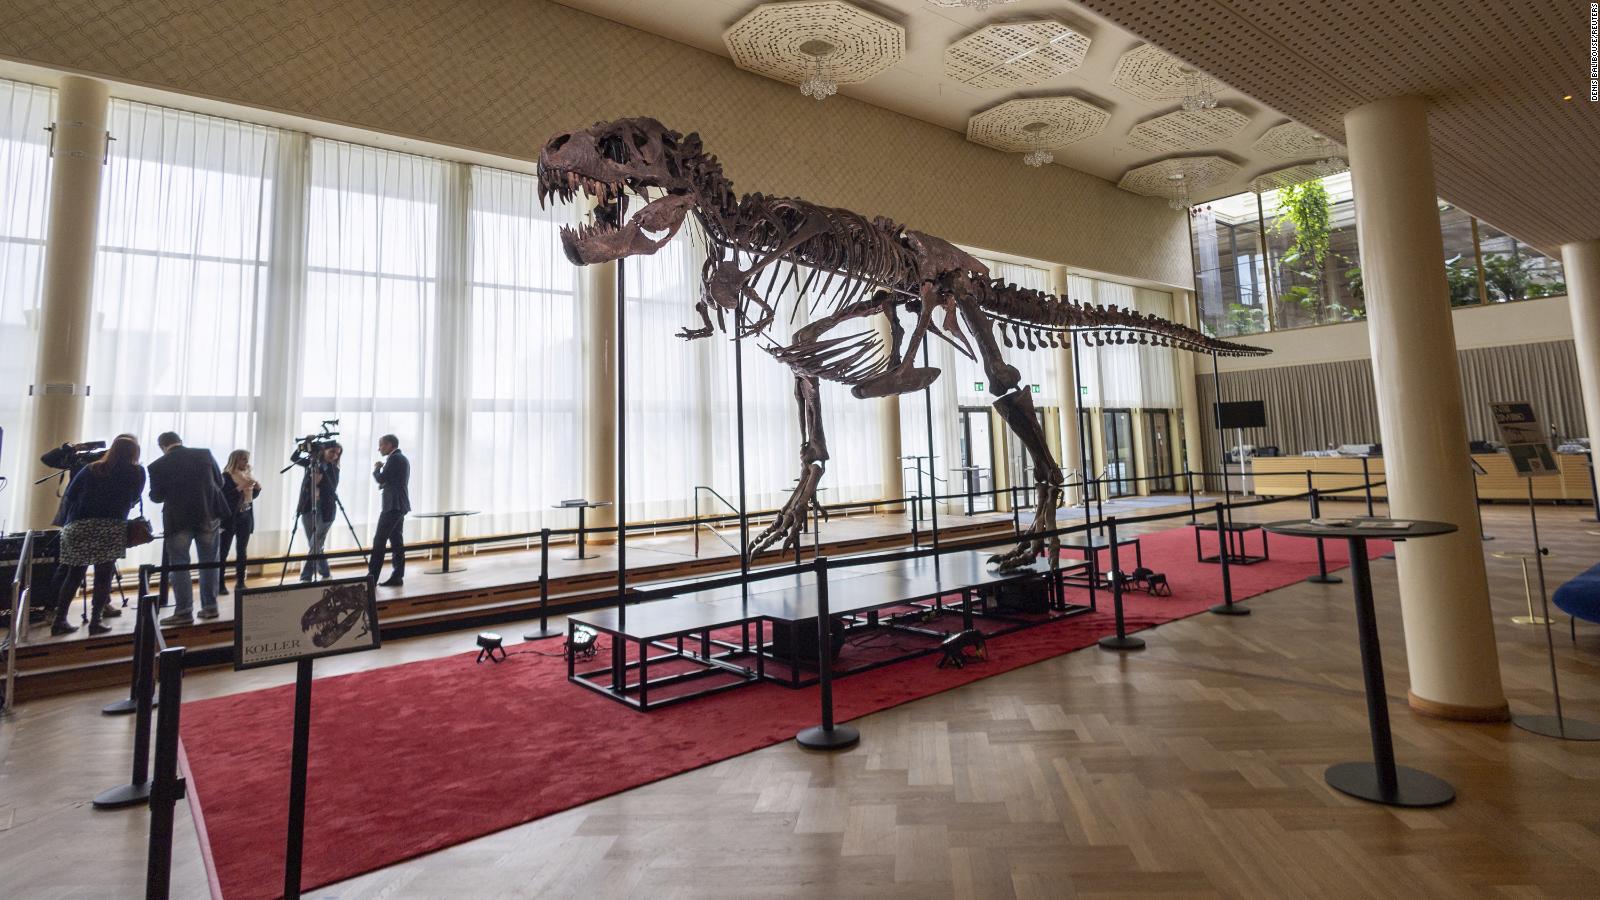 عرض هيكل الديناصور ترينيتي في بلجيكا بعد بيعه بـ 6,1 ملايين دولار